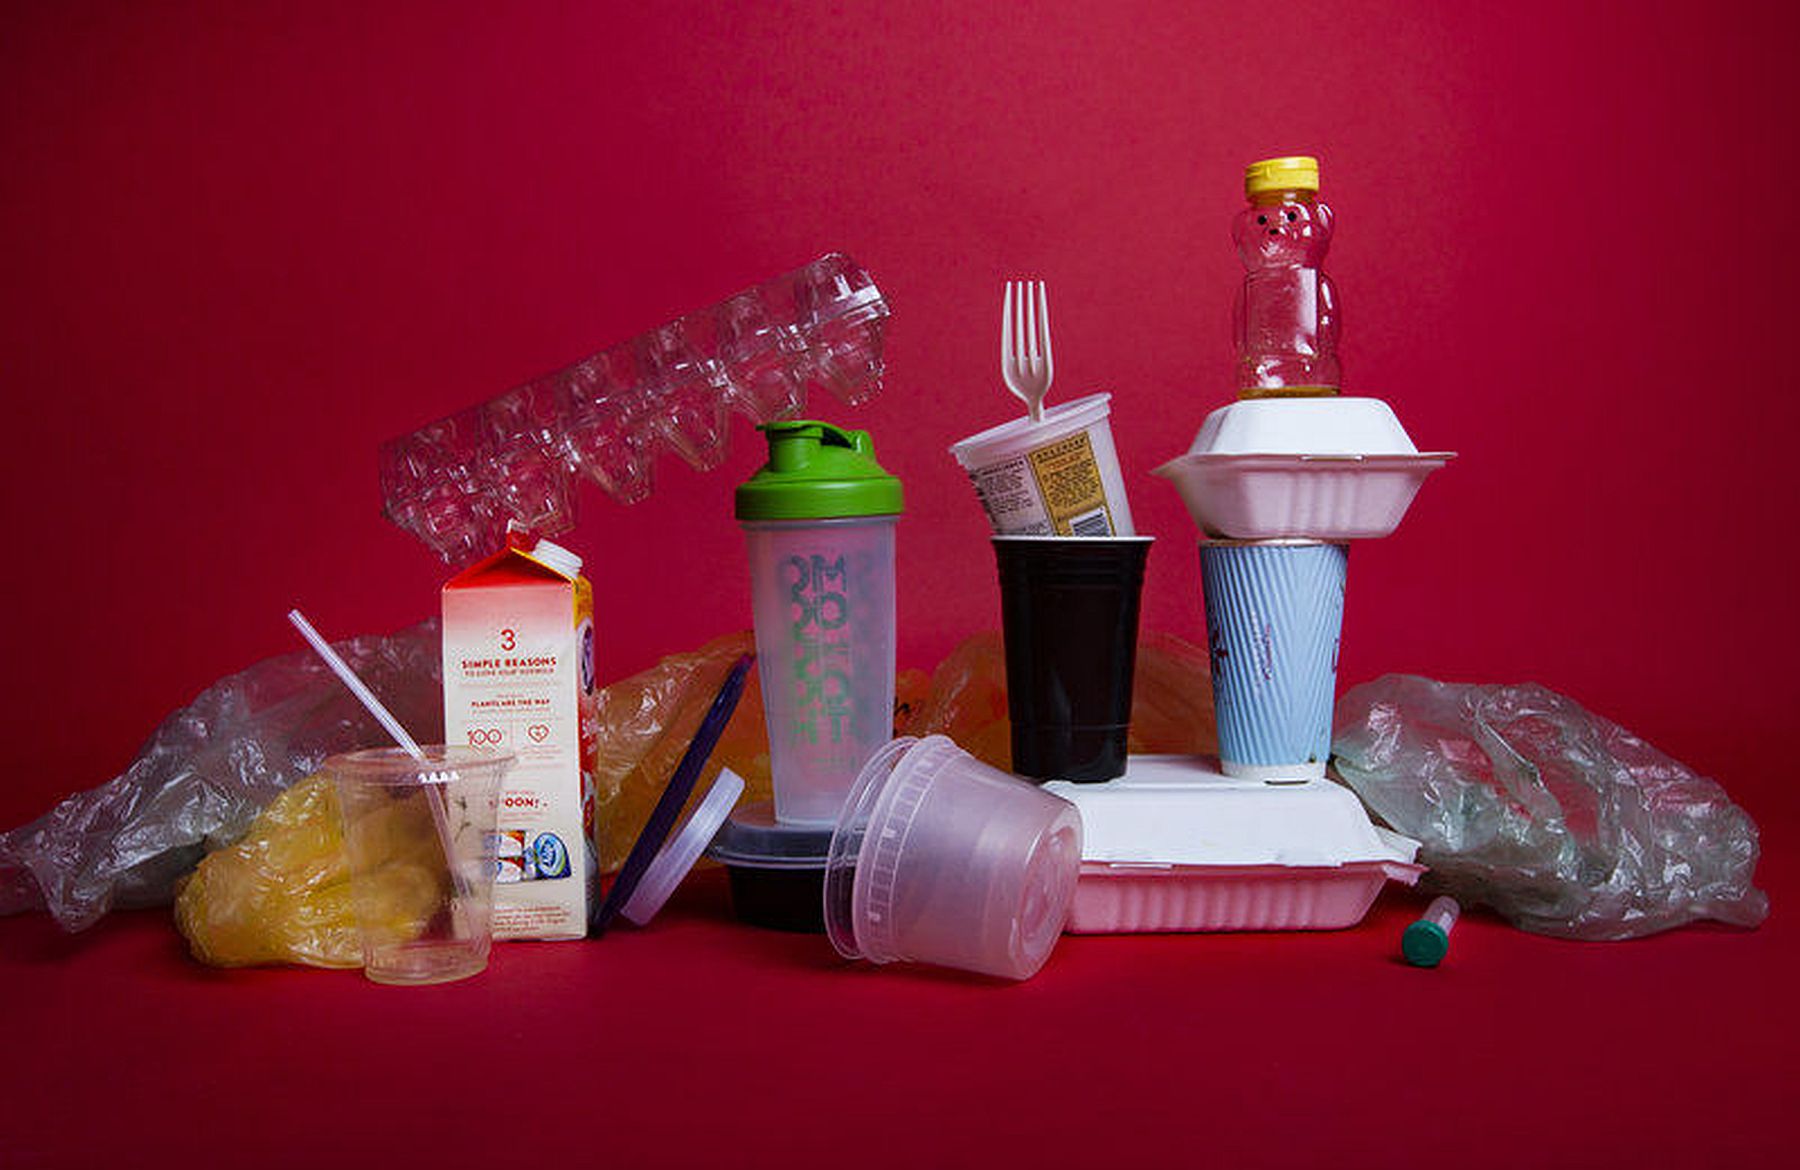 Műalkotás, játék, kézműves termék - egyszer használatos műanyagok új szerepben